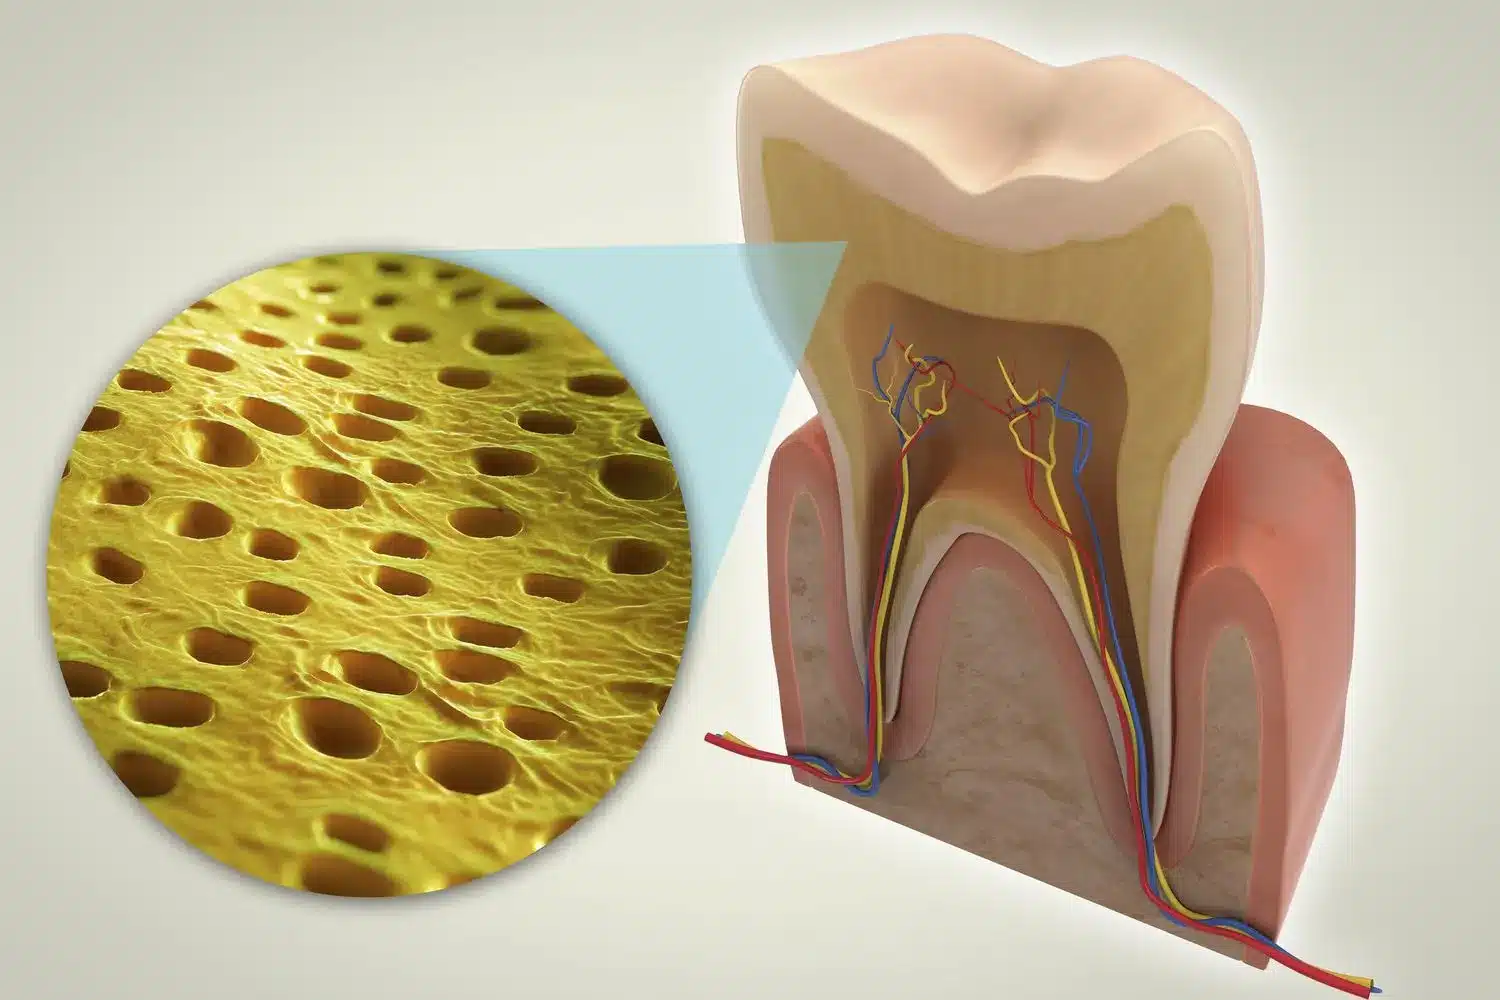 Ngà răng là cấu trúc quyết định hình dáng, màu sắc của răng